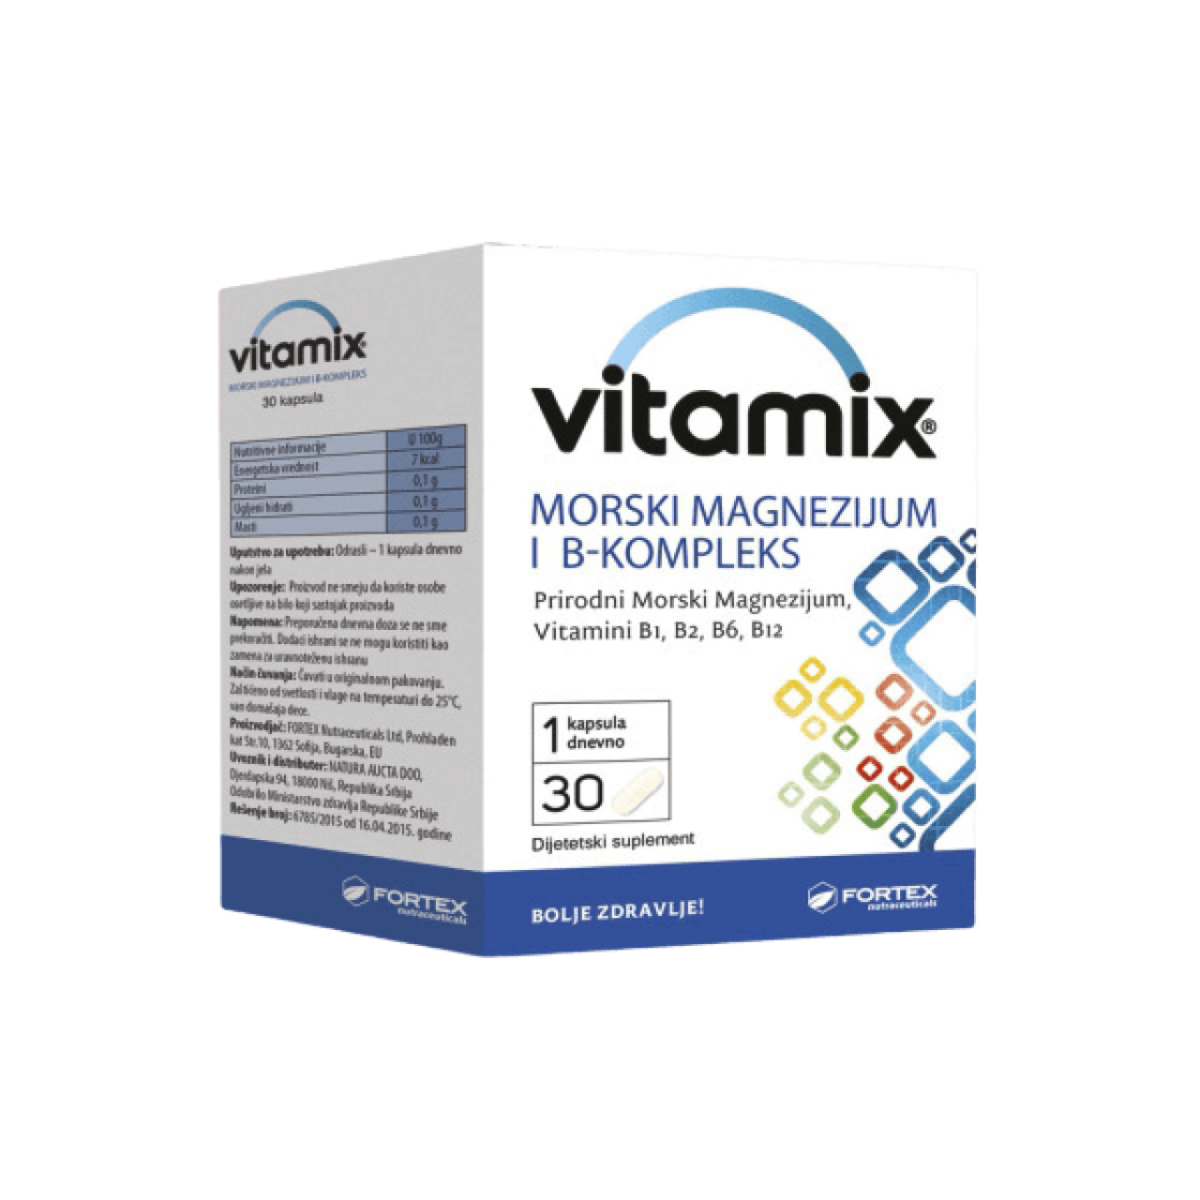 Vitamix morski magnezijum + B-kompleks kapsule a30